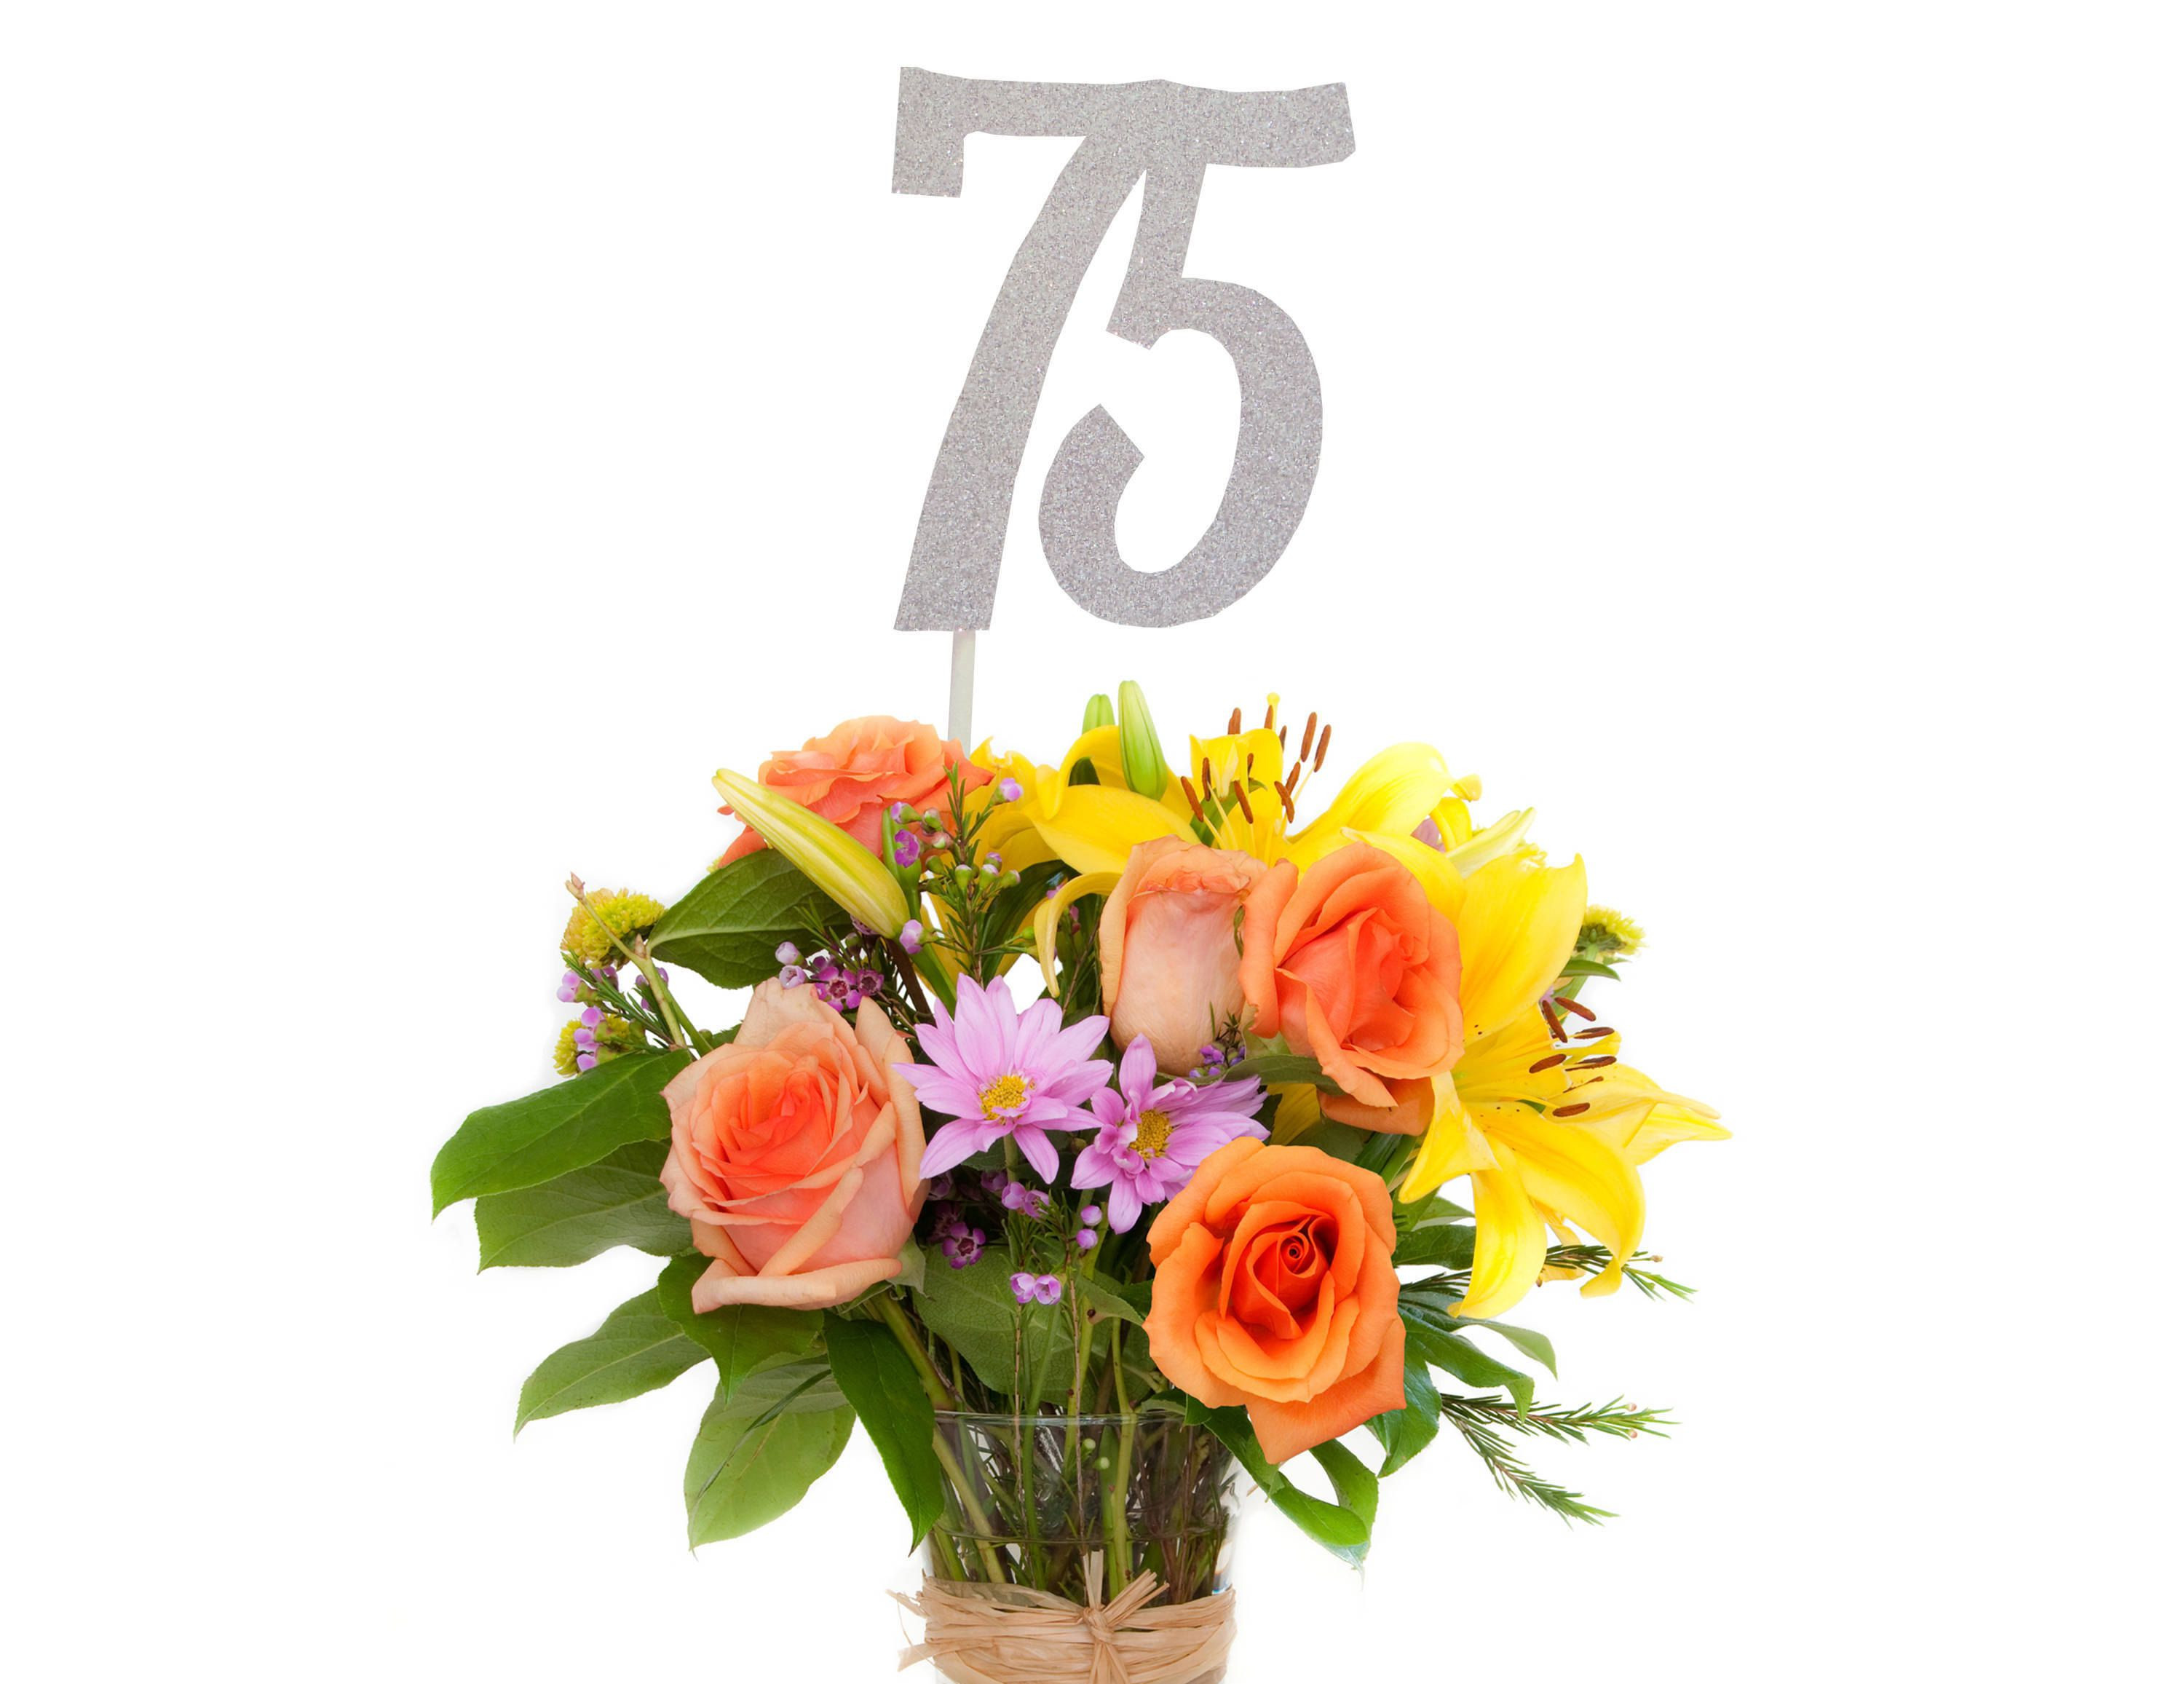 Geburtstagssprüche Zum 75. Geburtstag
 Einladungen Zum 75 Geburtstag Kostenlos